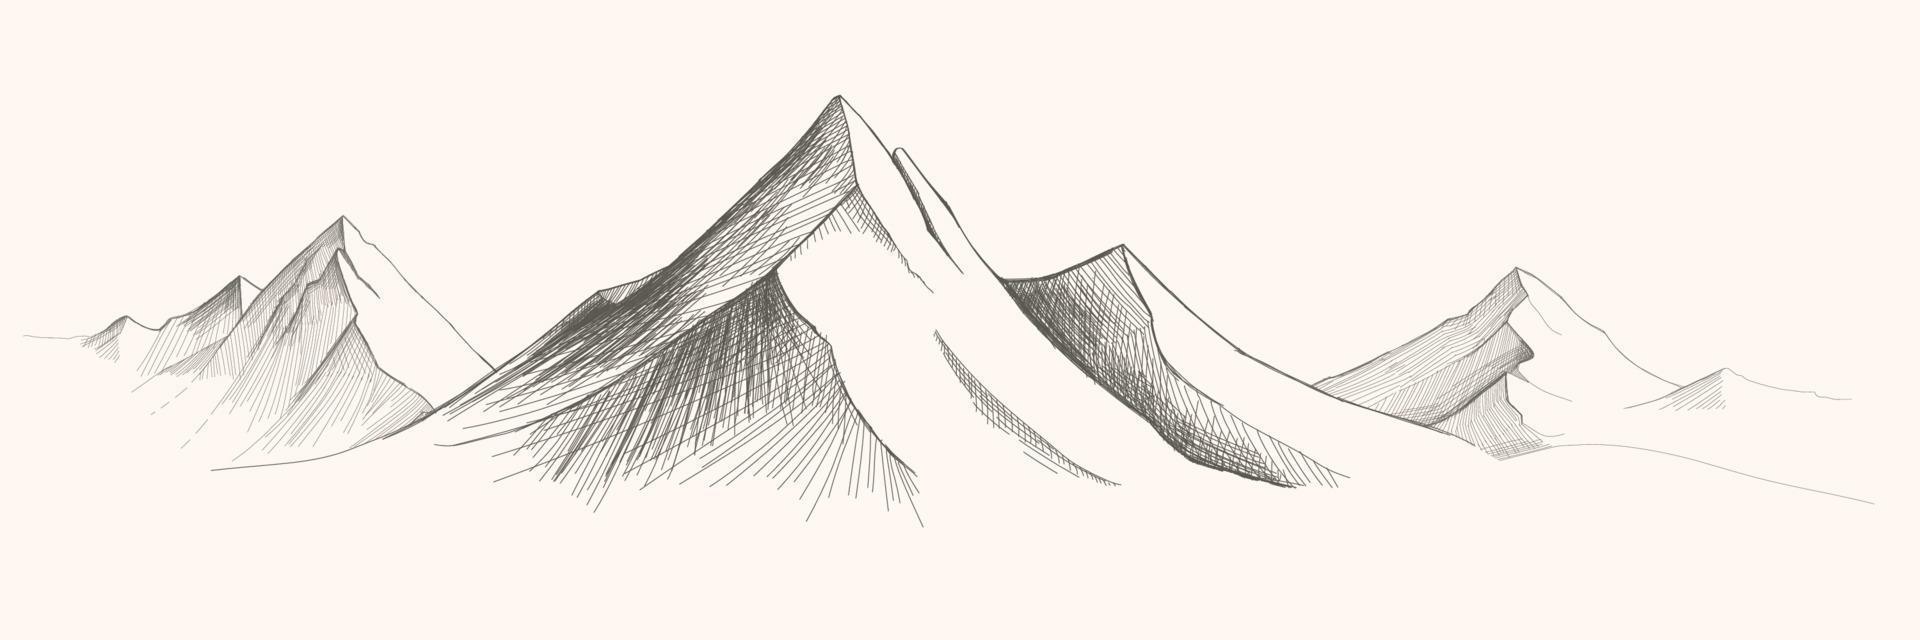 bergen intervall. vektor panorama skiss illustration. bergen skiss vektor illustration.